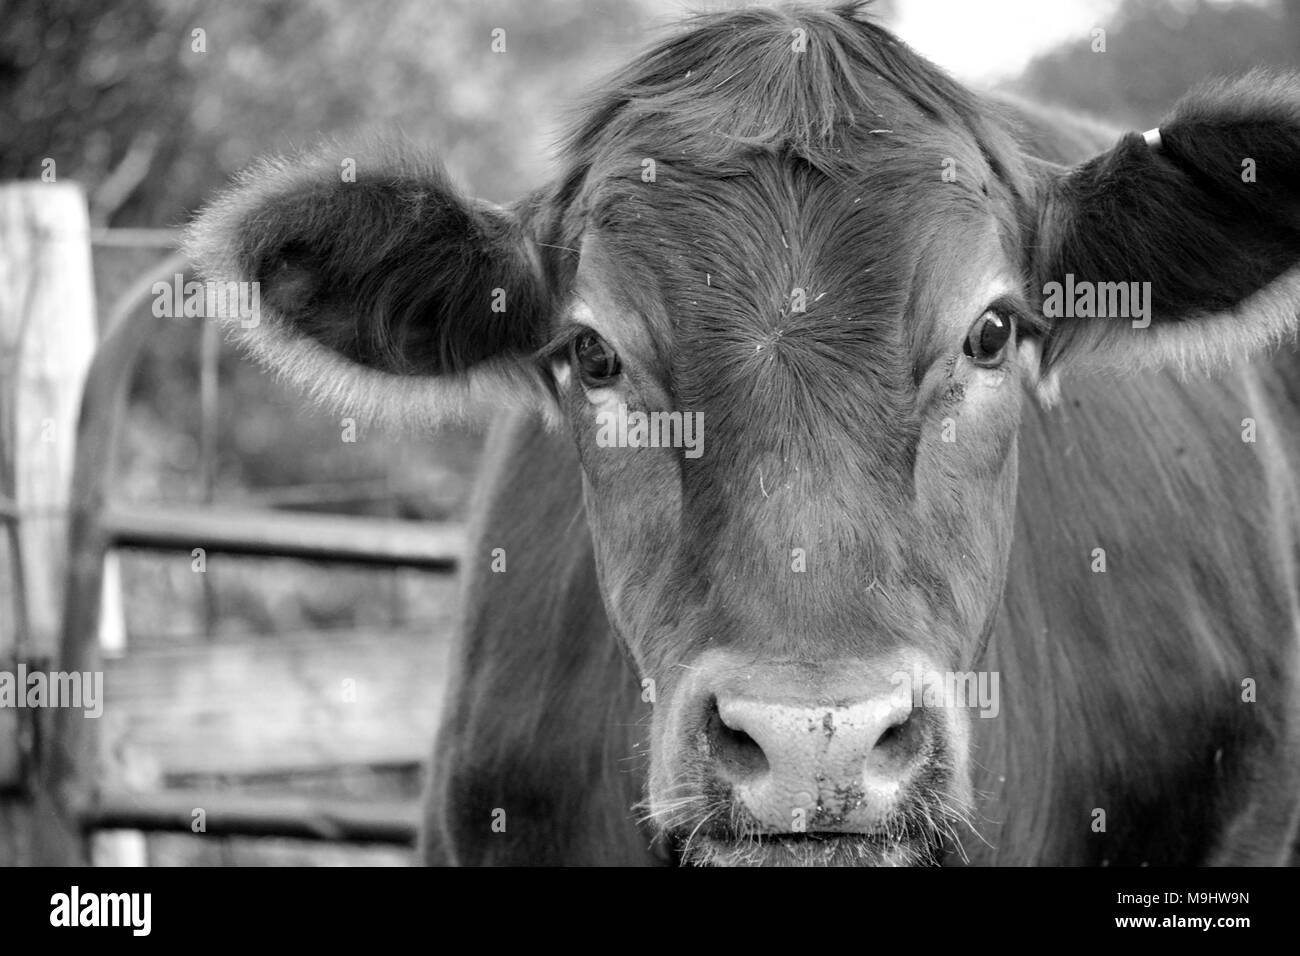 Gesicht oder Kopf eines roten Kuh auf einem Bauernhof in Schwarz und Weiß, Iowa Stockfoto